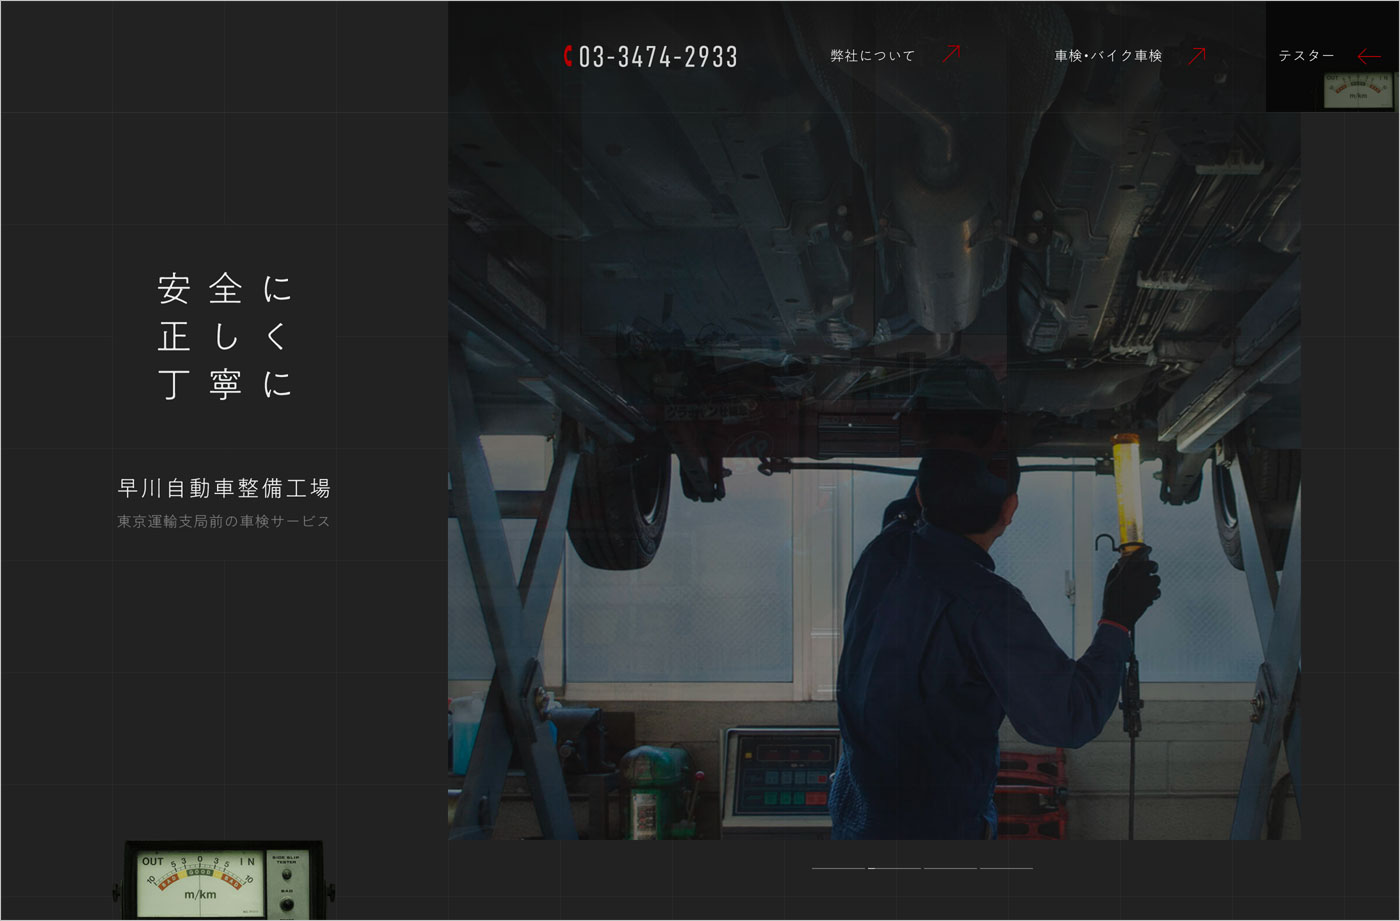 早川自動車整備工場ウェブサイトの画面キャプチャ画像